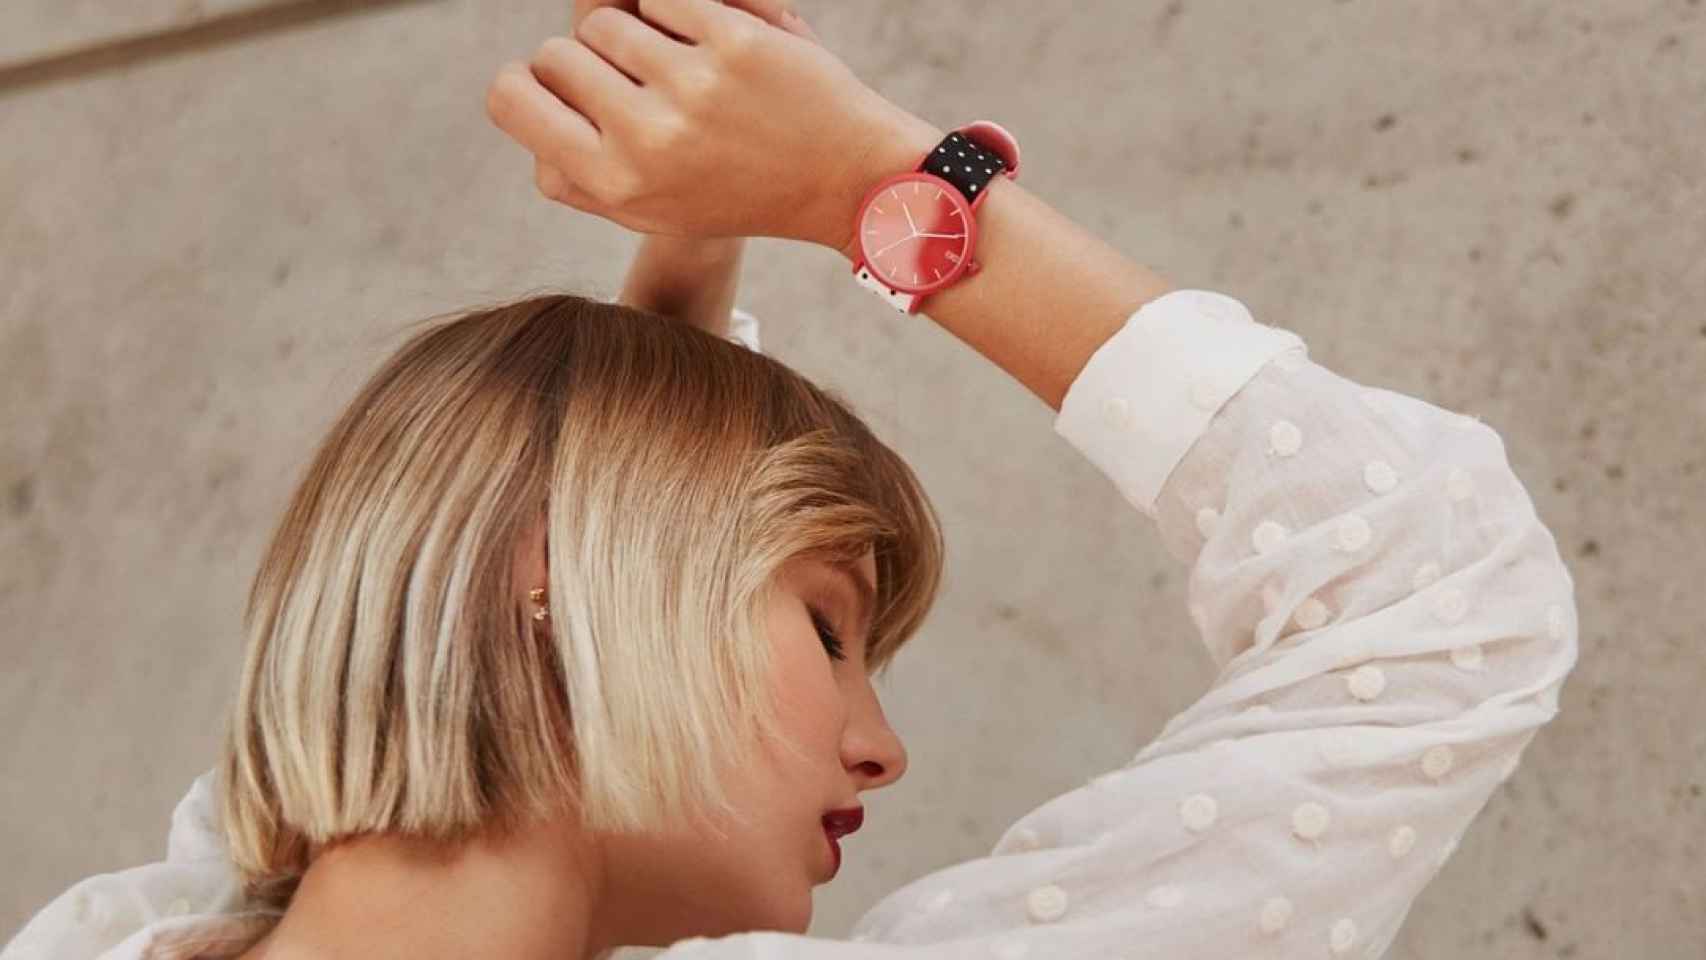 Una modelo luce un Button Watch en una imagen de Instagram.